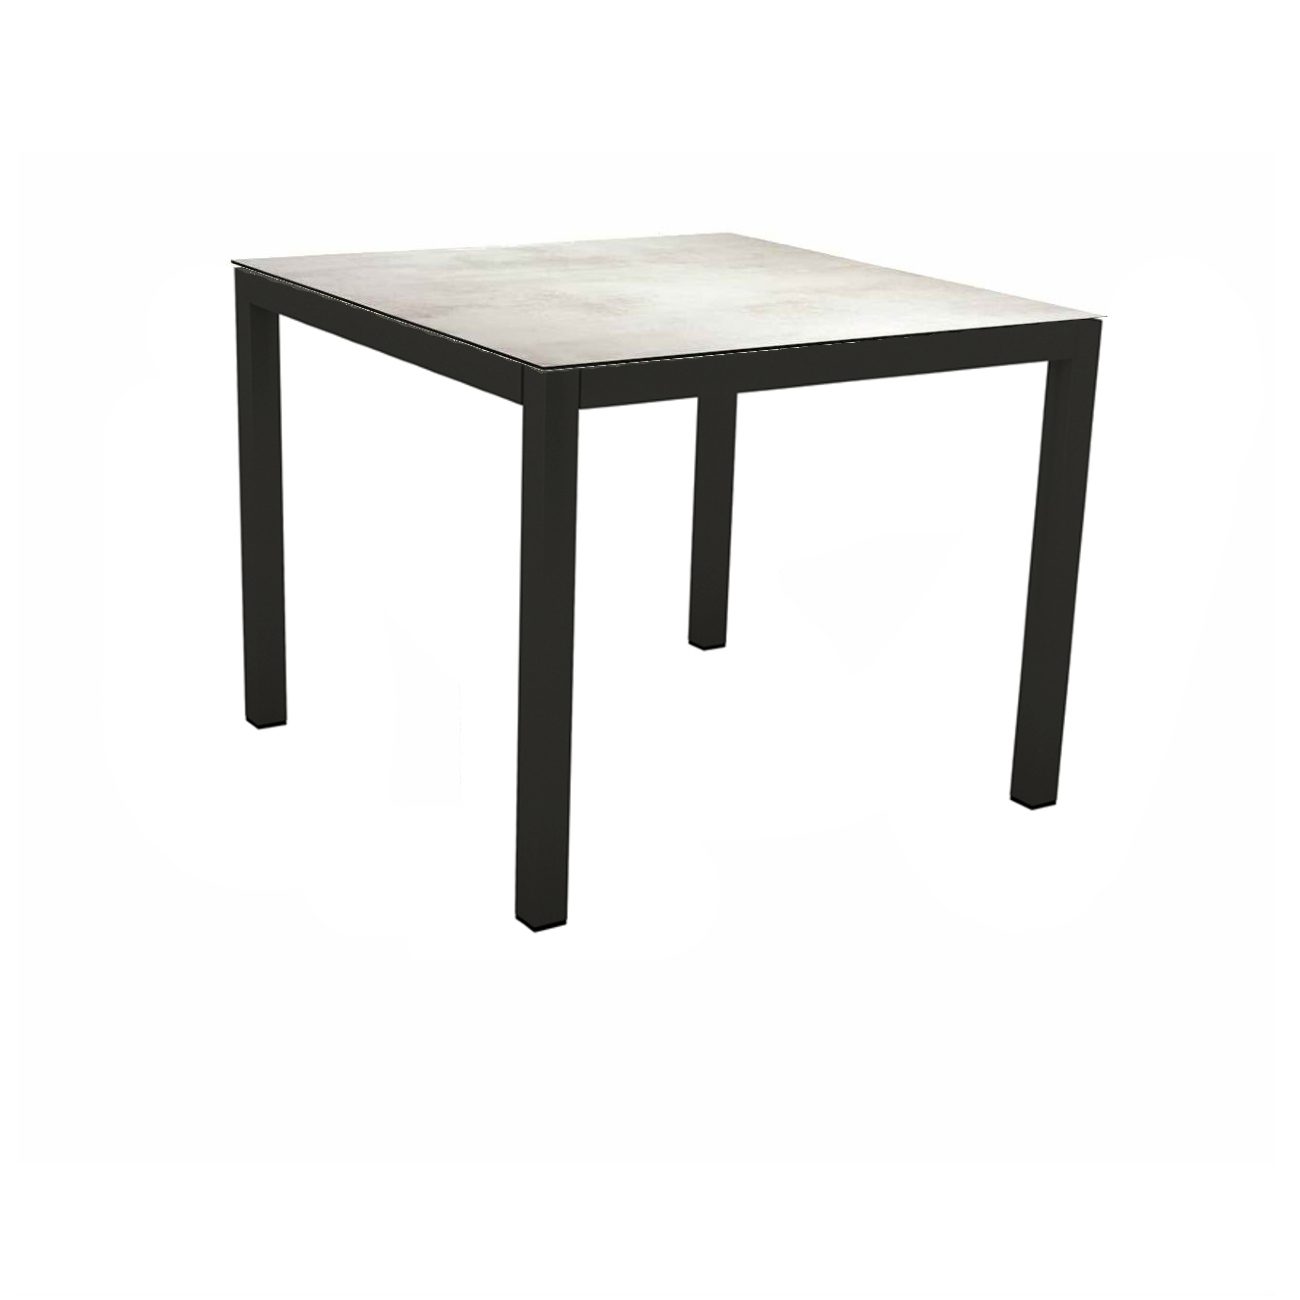 Stern Gartentisch, Gestell Aluminium schwarz matt, Tischplatte HPL Zement hell, 90x90 cm